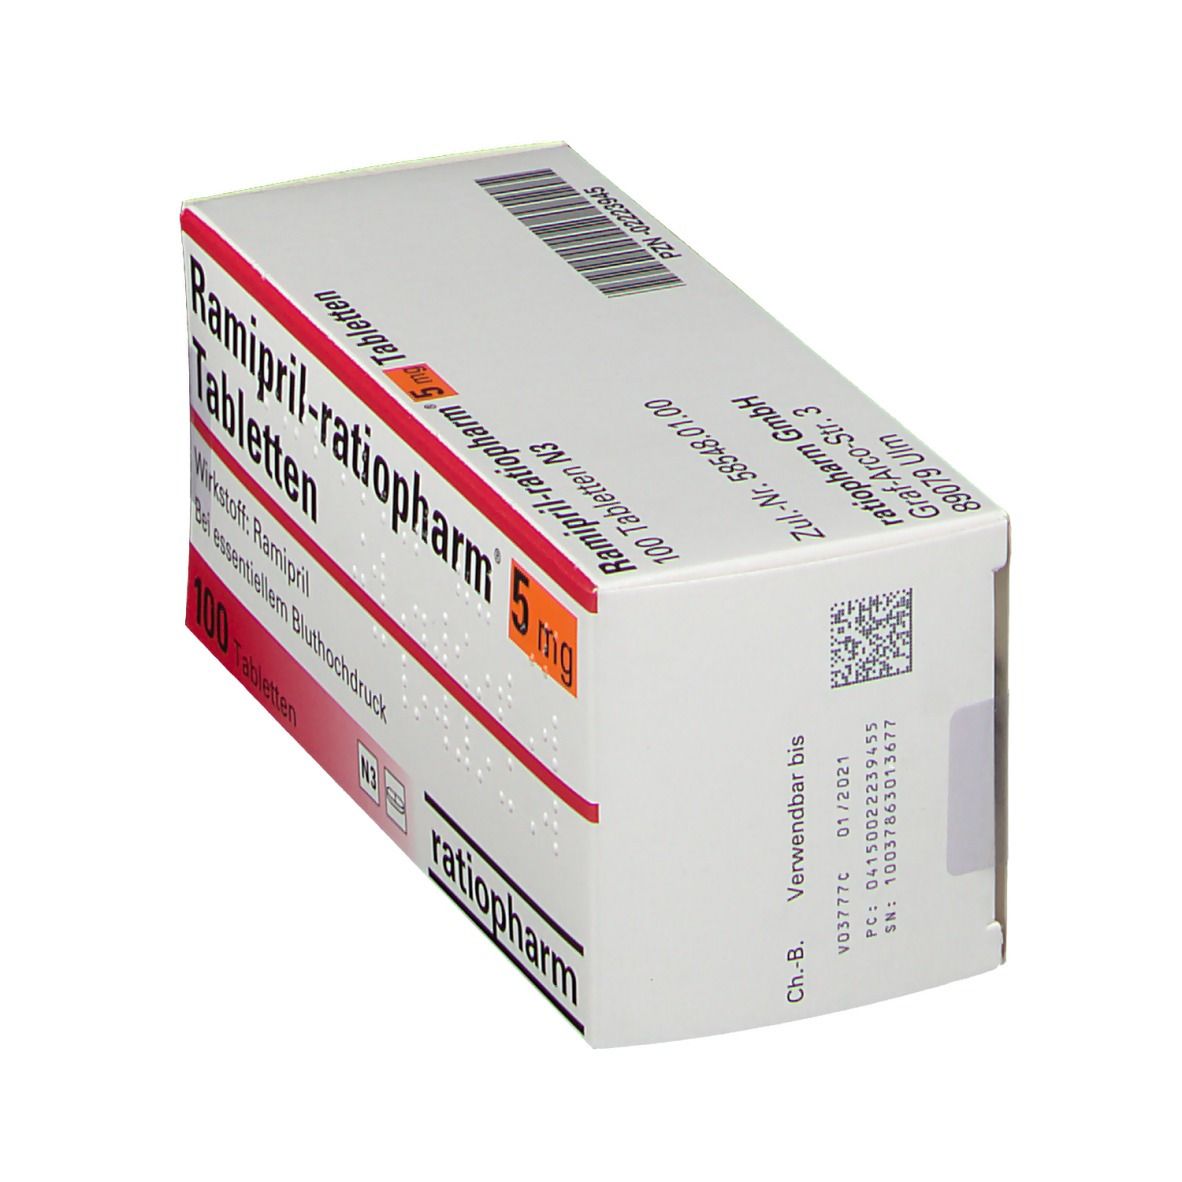 Ramipril-ratiopharm® 5 mg